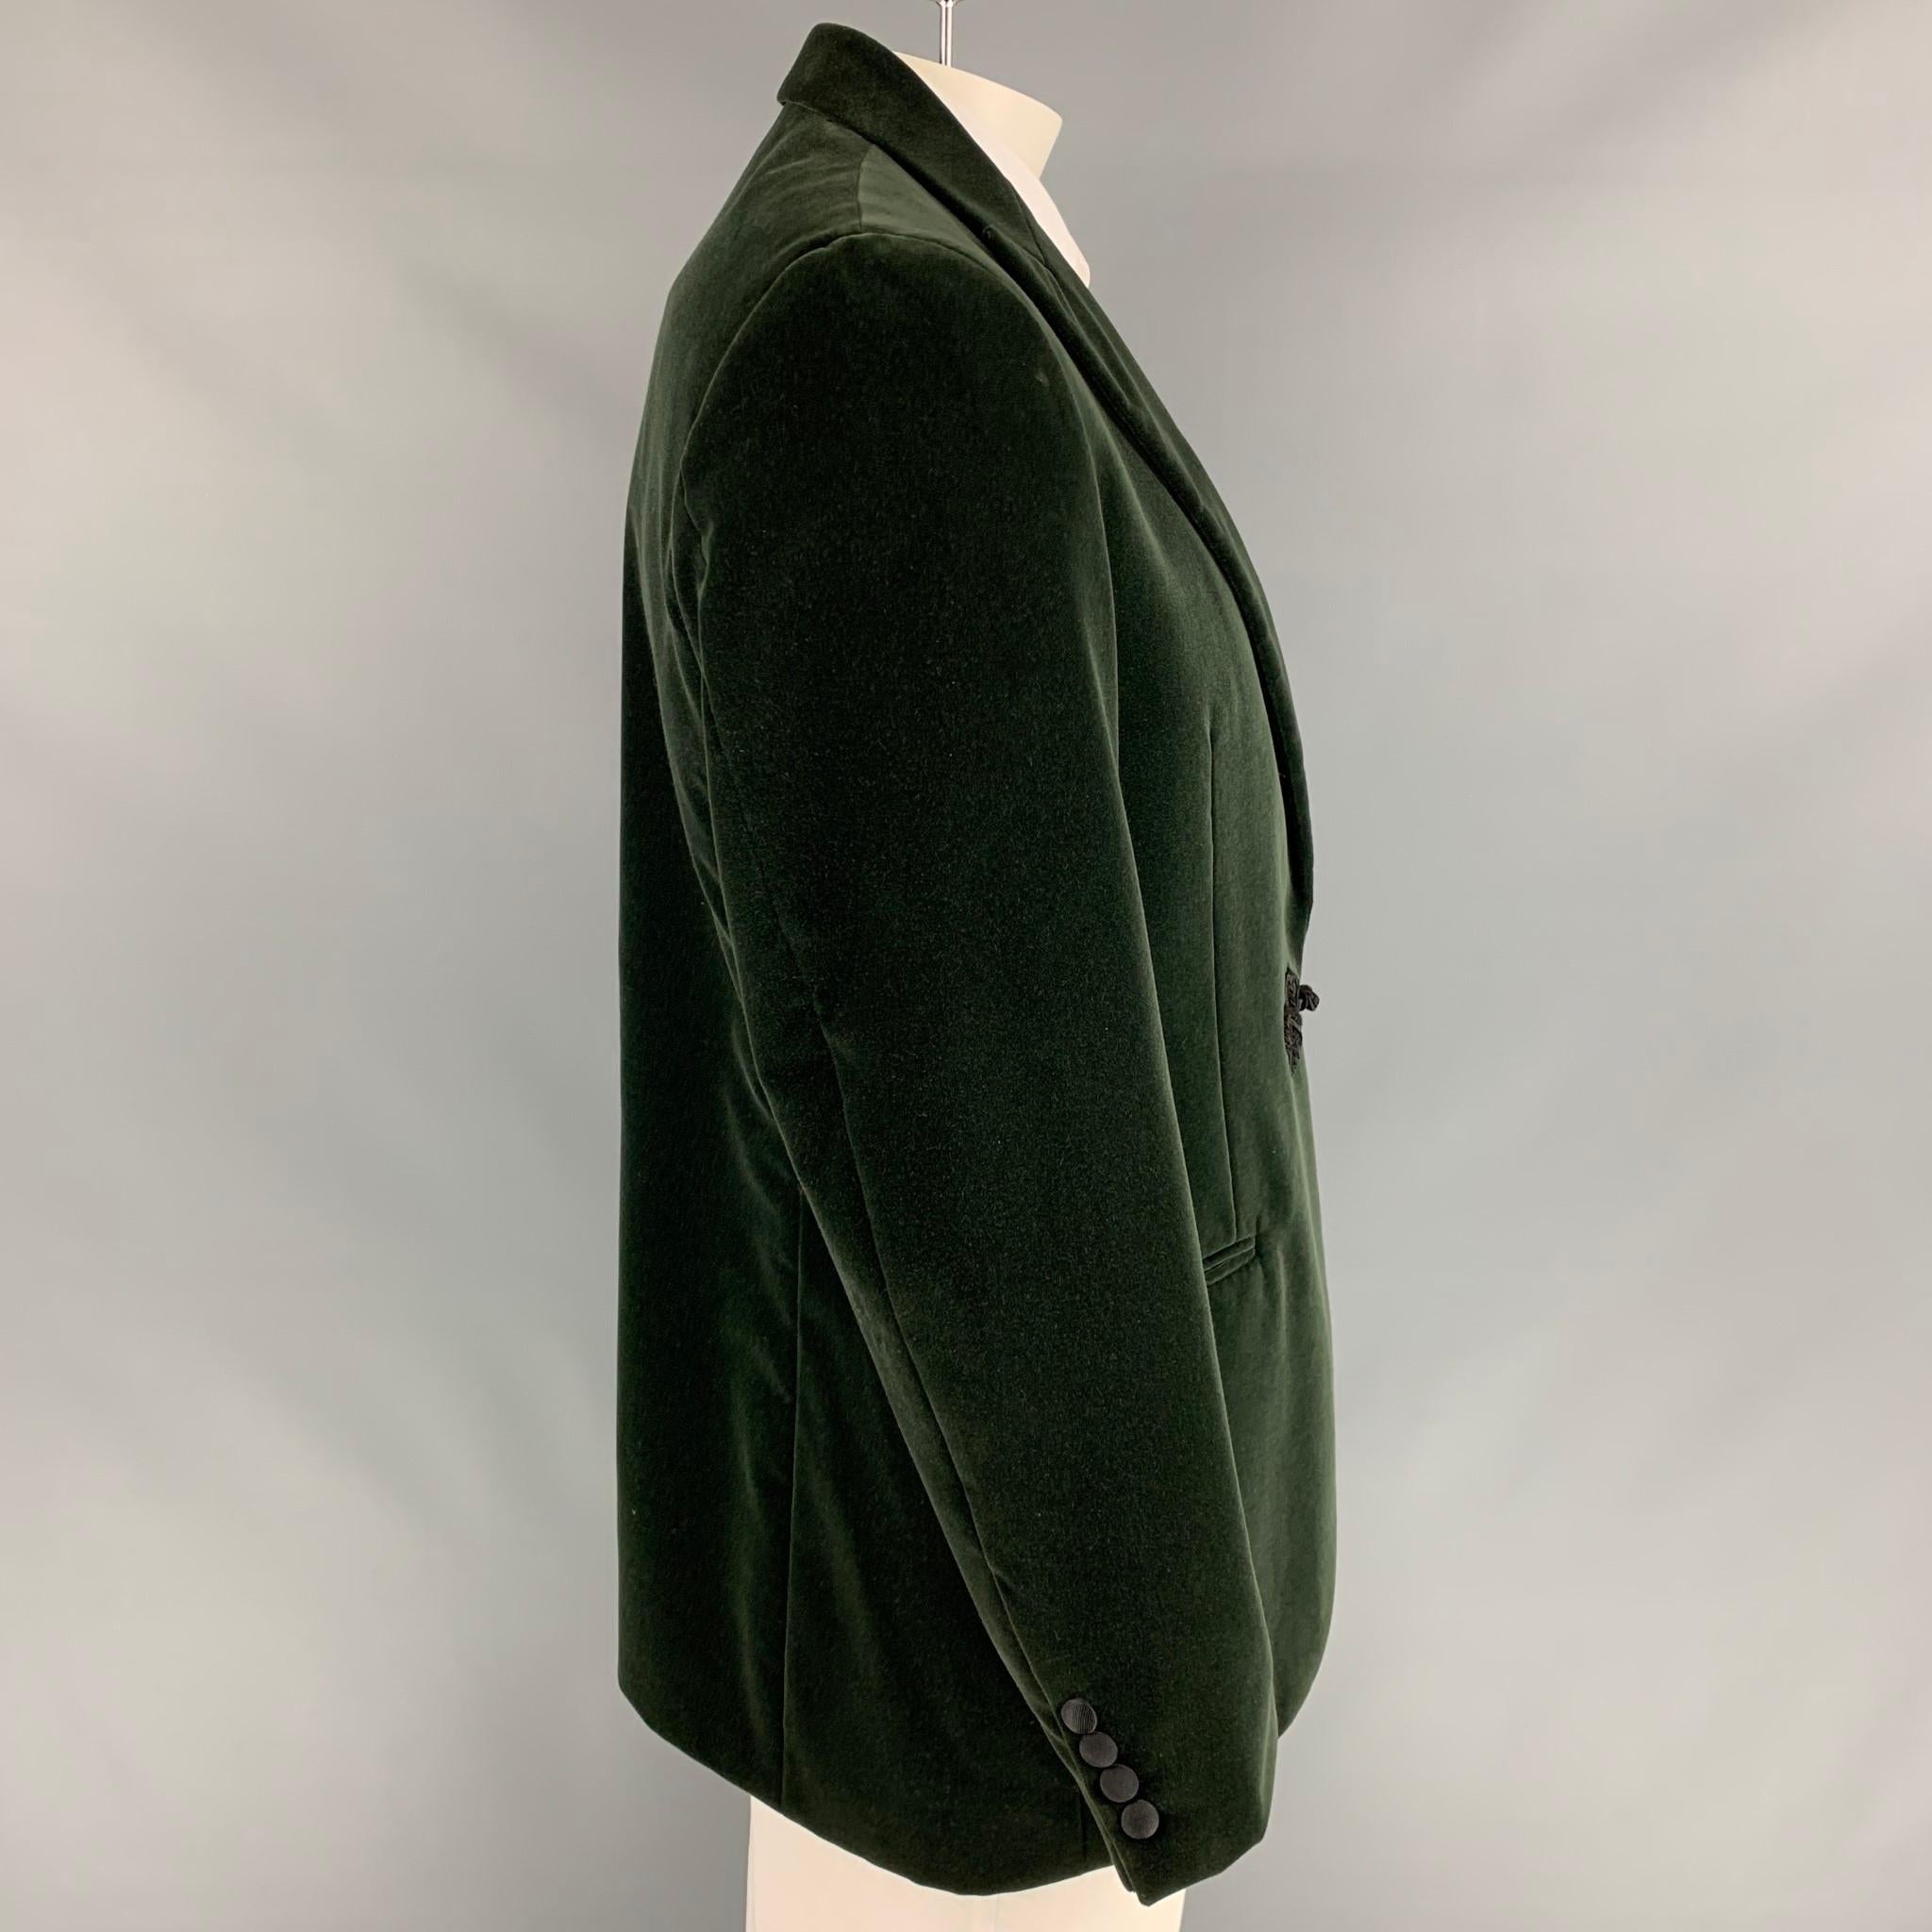 Black POLO by RALPH LAUREN Size 44 Regular Green Velvet Cotton Peak Lapel Sport Coat